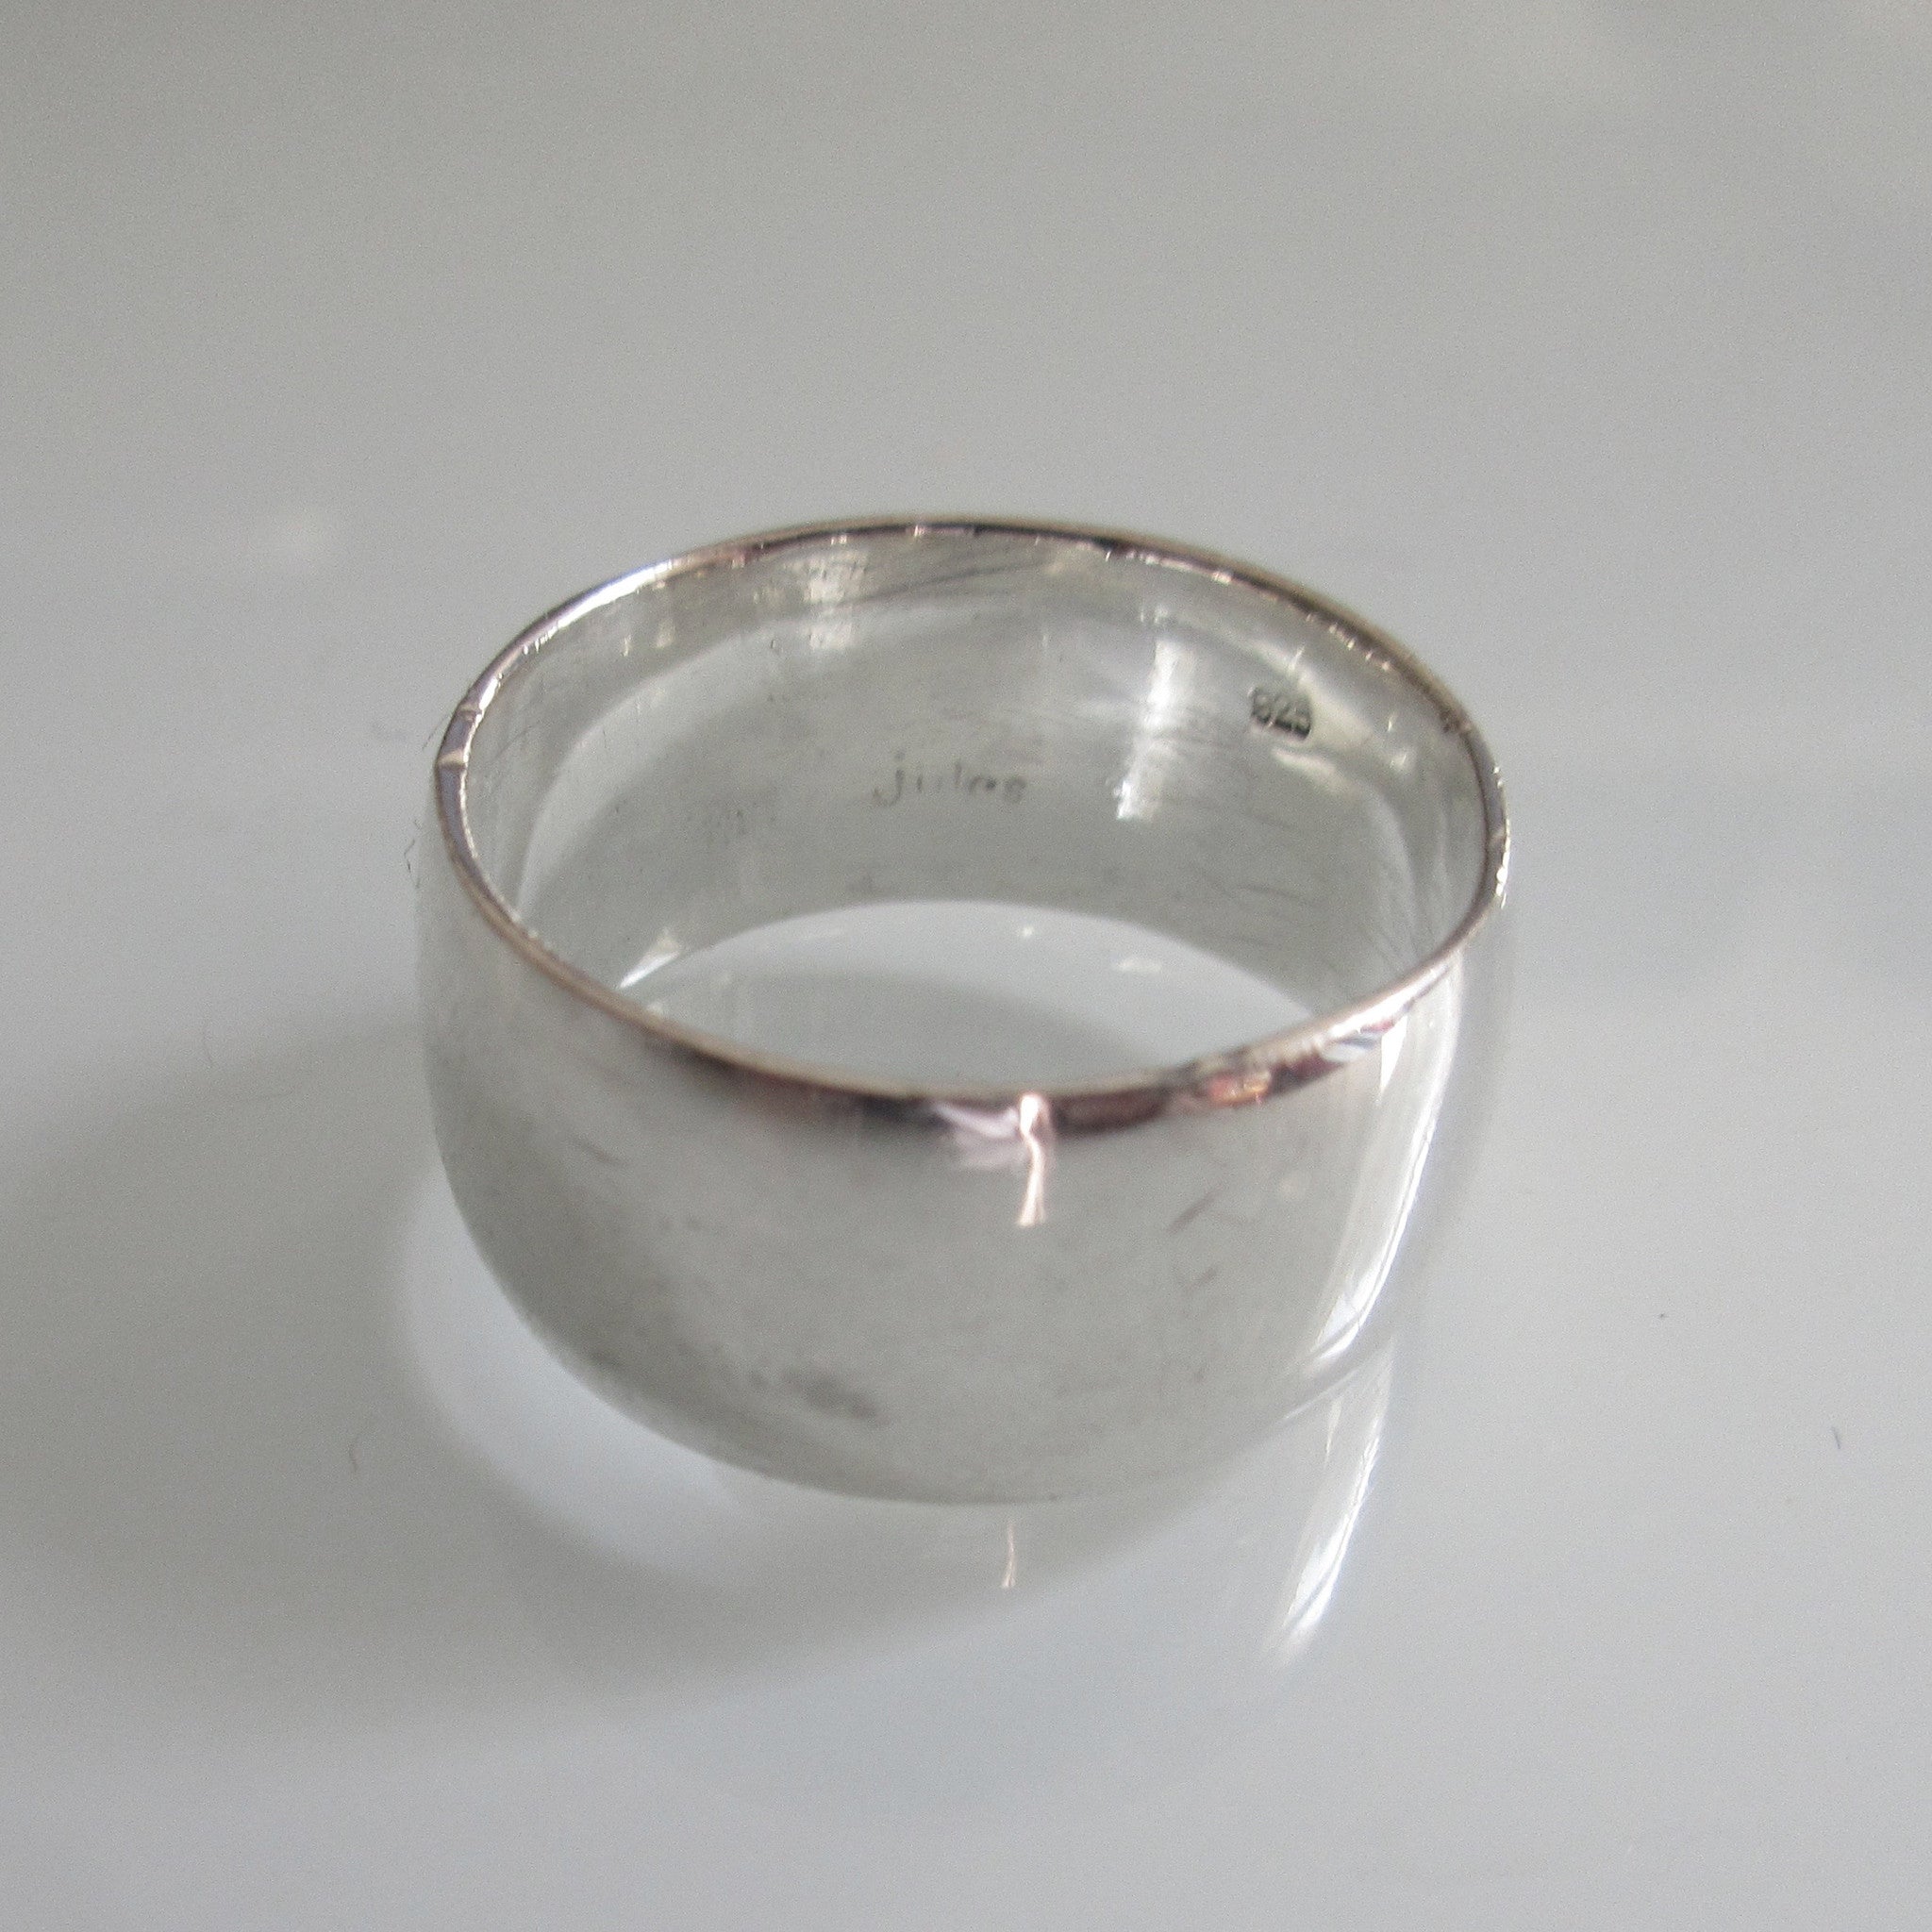 Vintage Sterling Silver Band Ring Polished